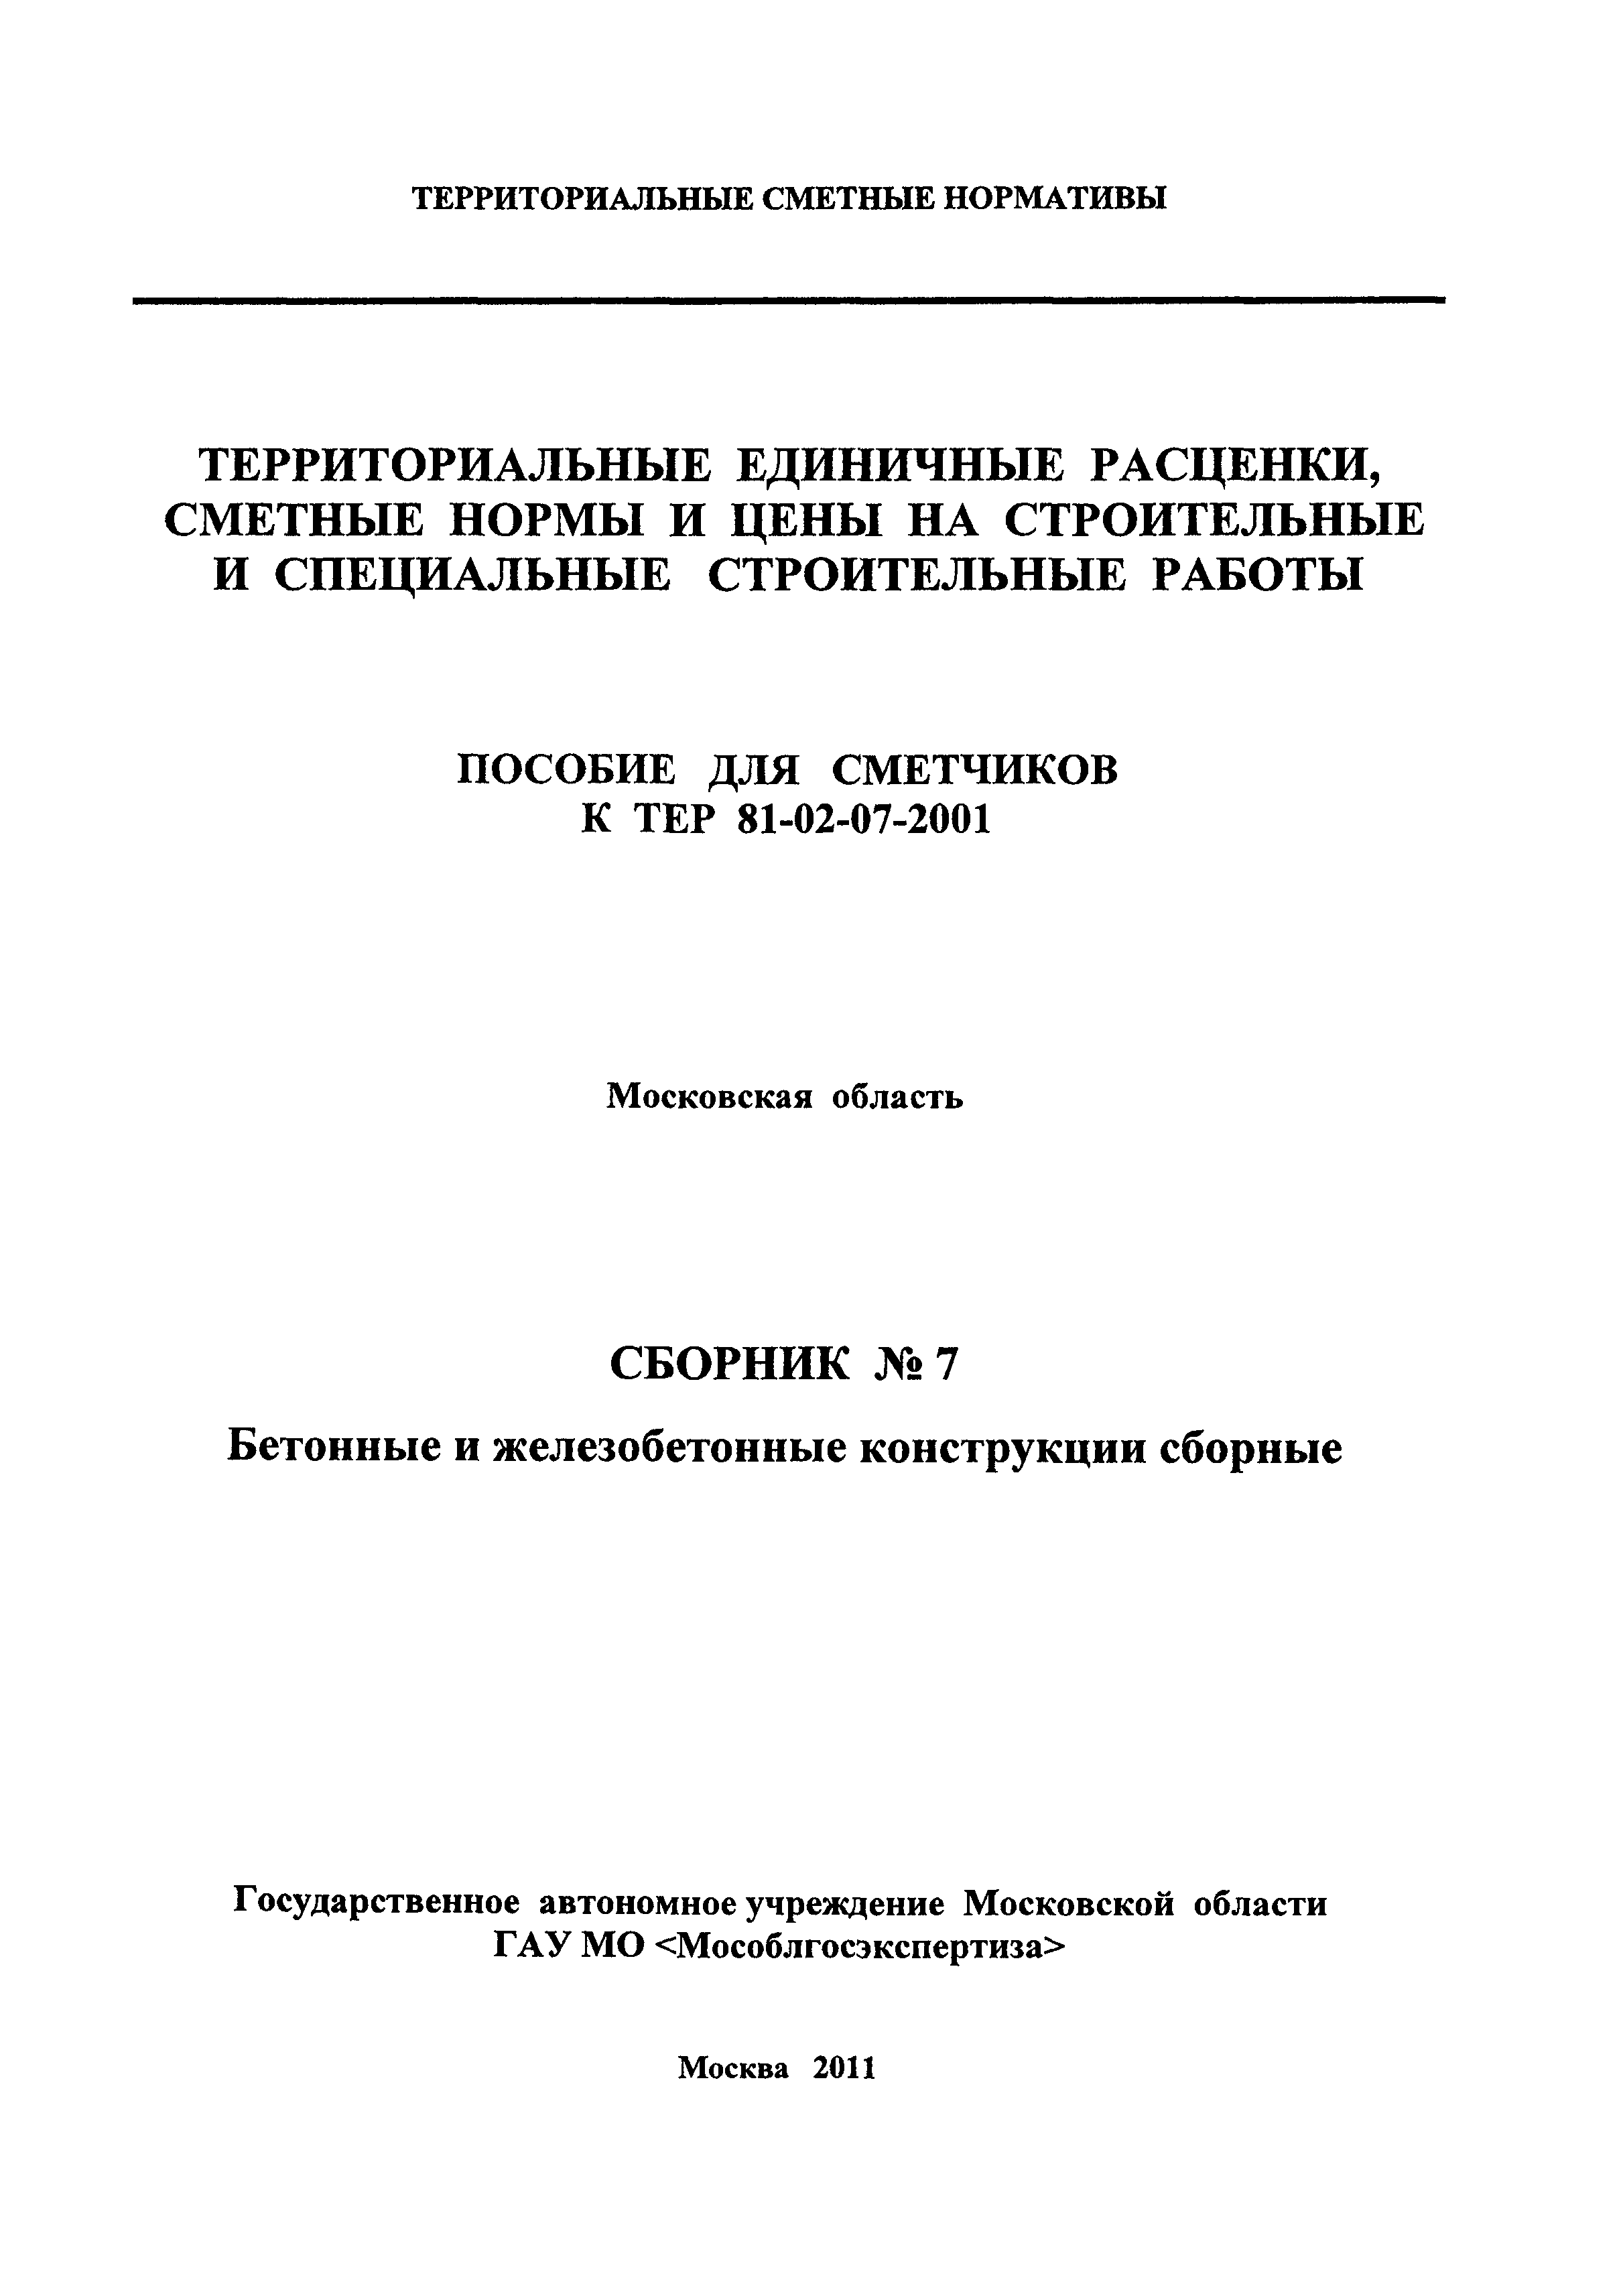 ГЭСНПиТЕР 2001-7 Московской области